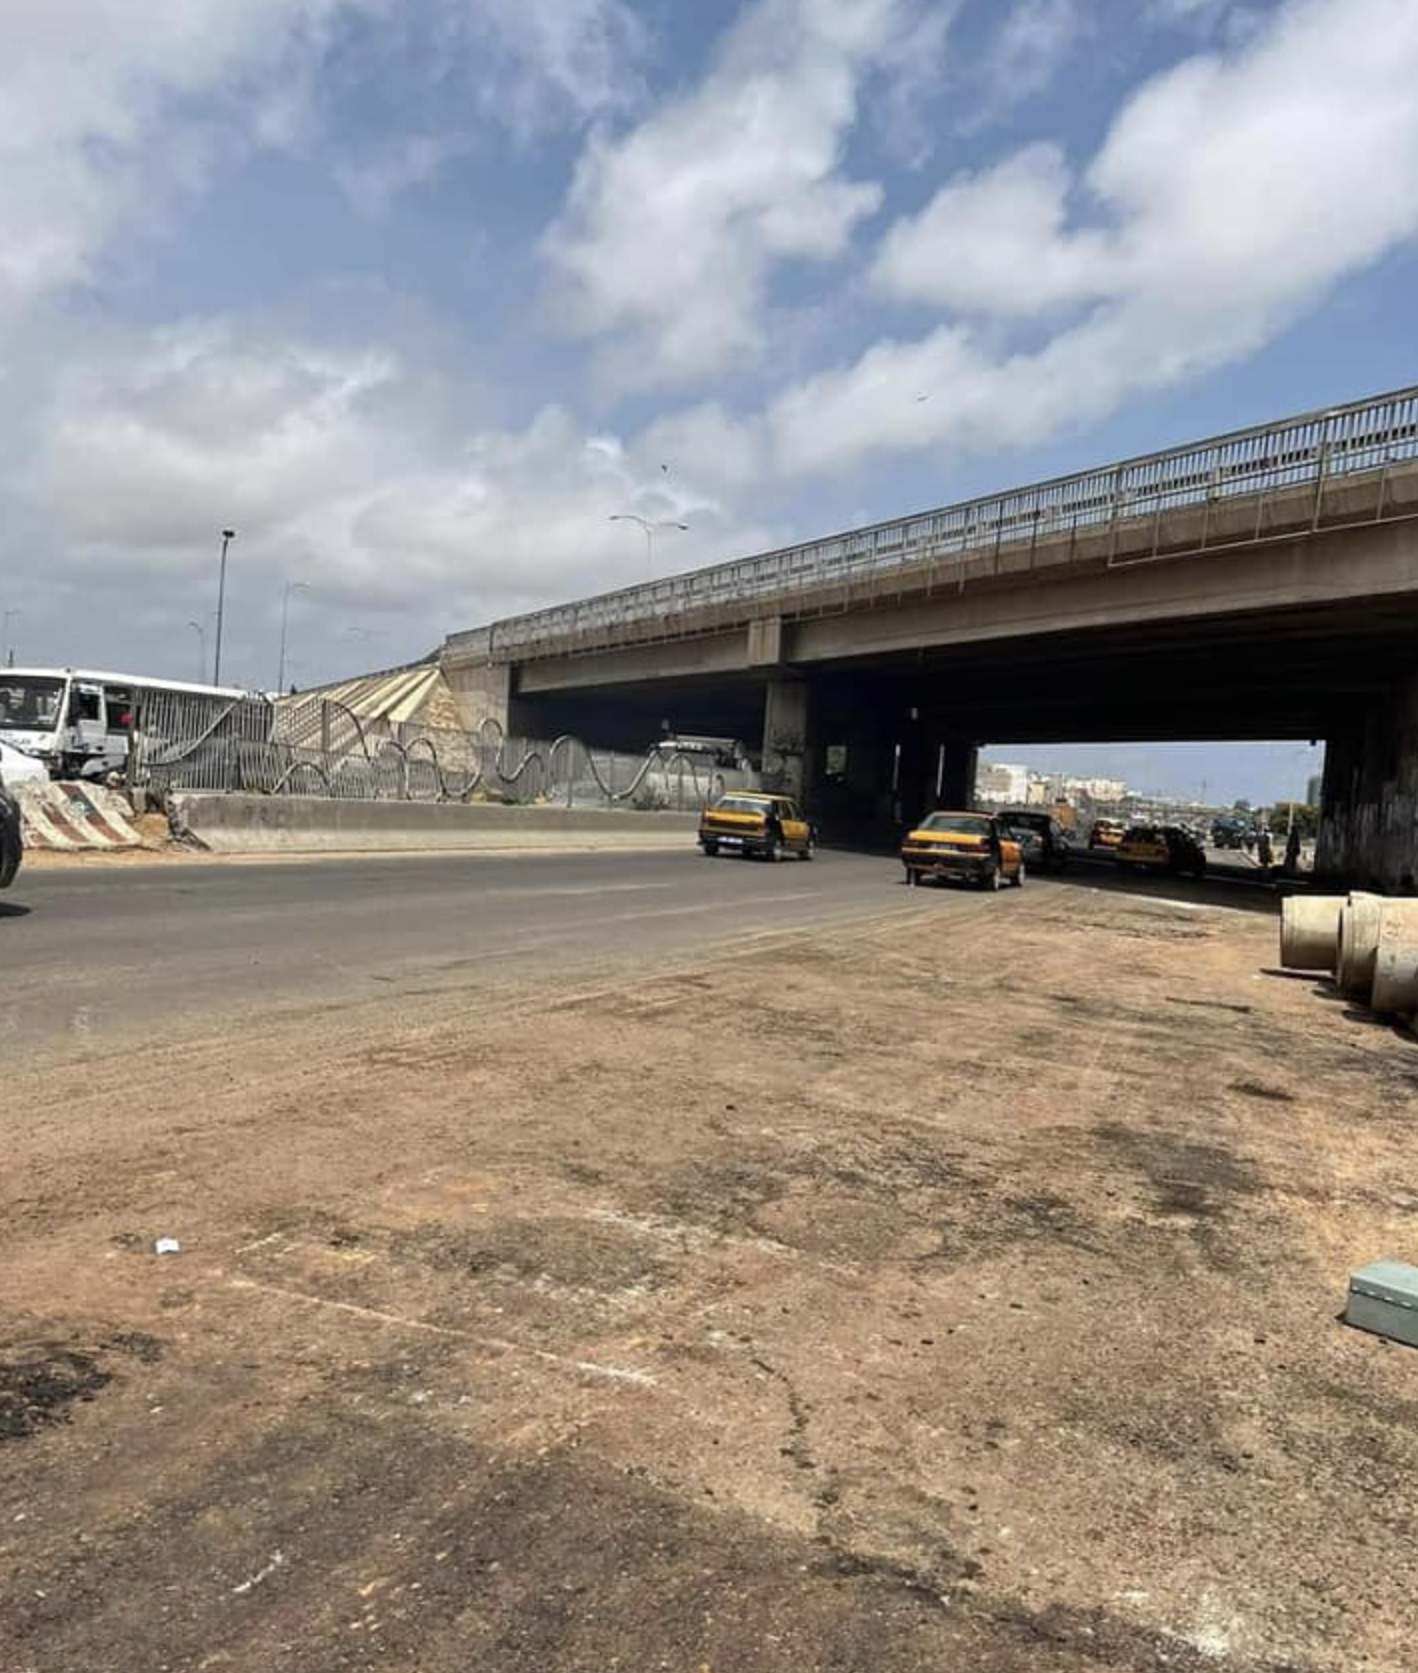 Affaissement de la chaussée sur l’autoroute Patte d'oie : L’infrastructure reconstruite en moins de 24h